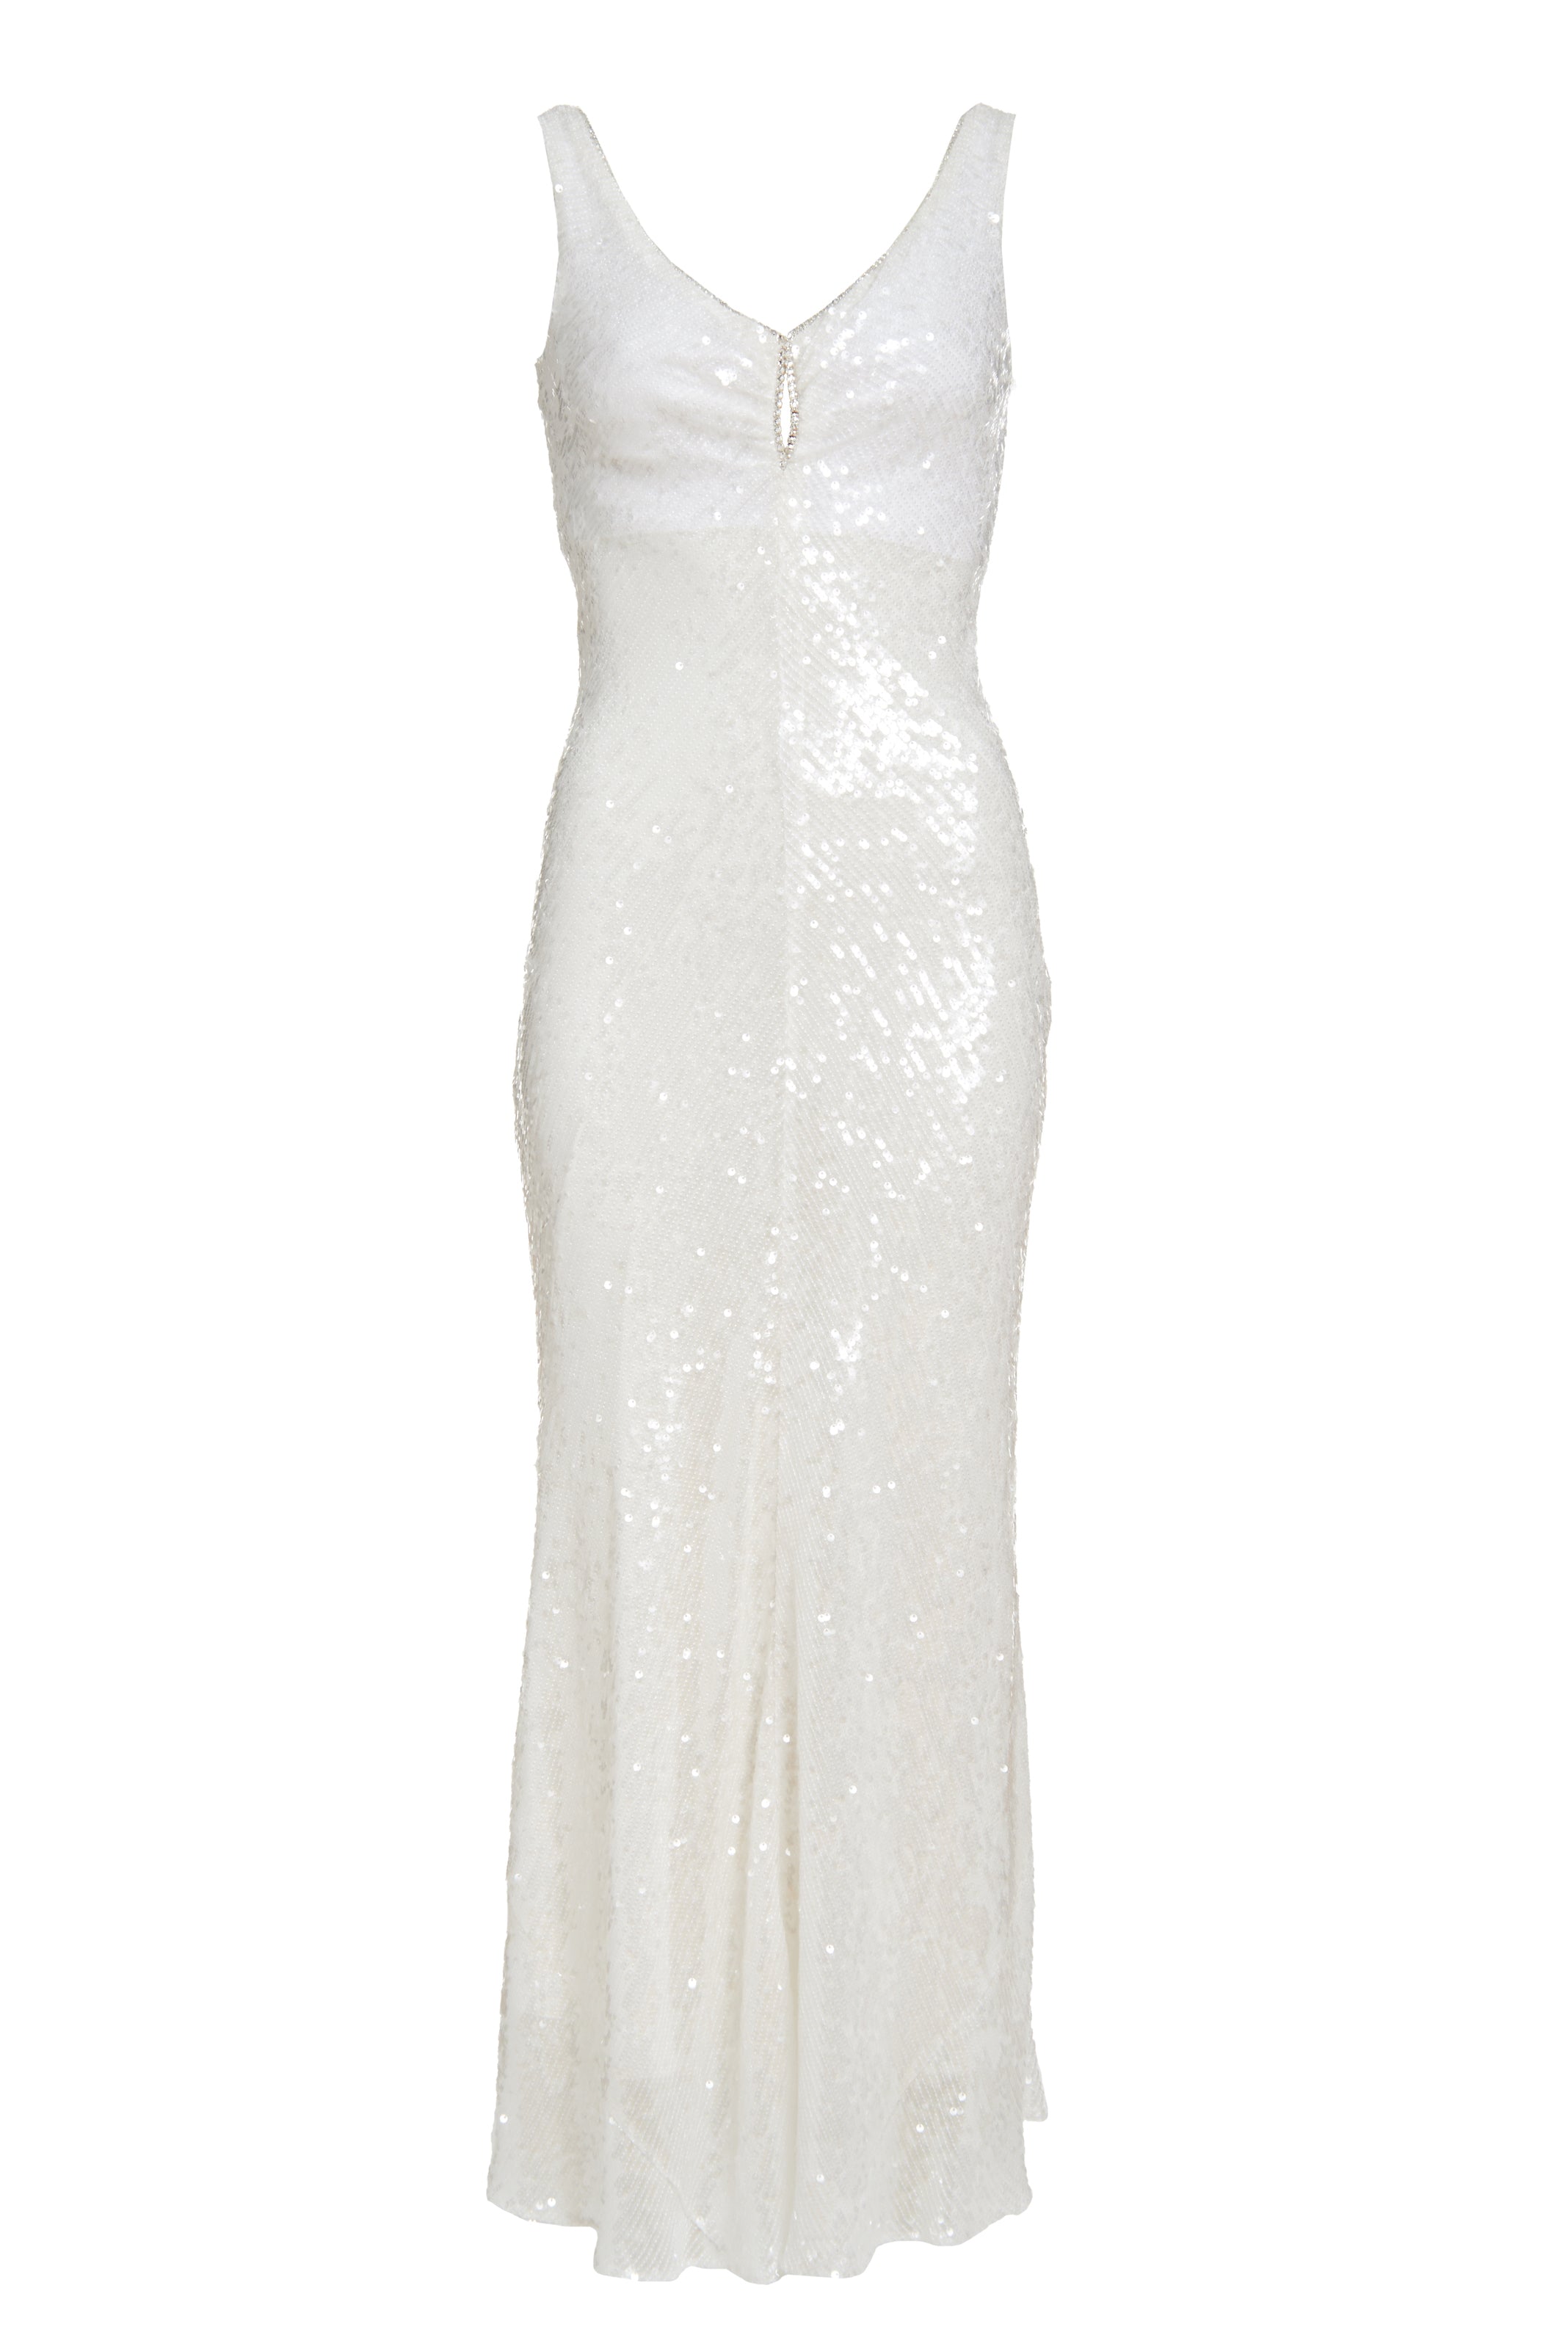 Coquette White Sequin Dress